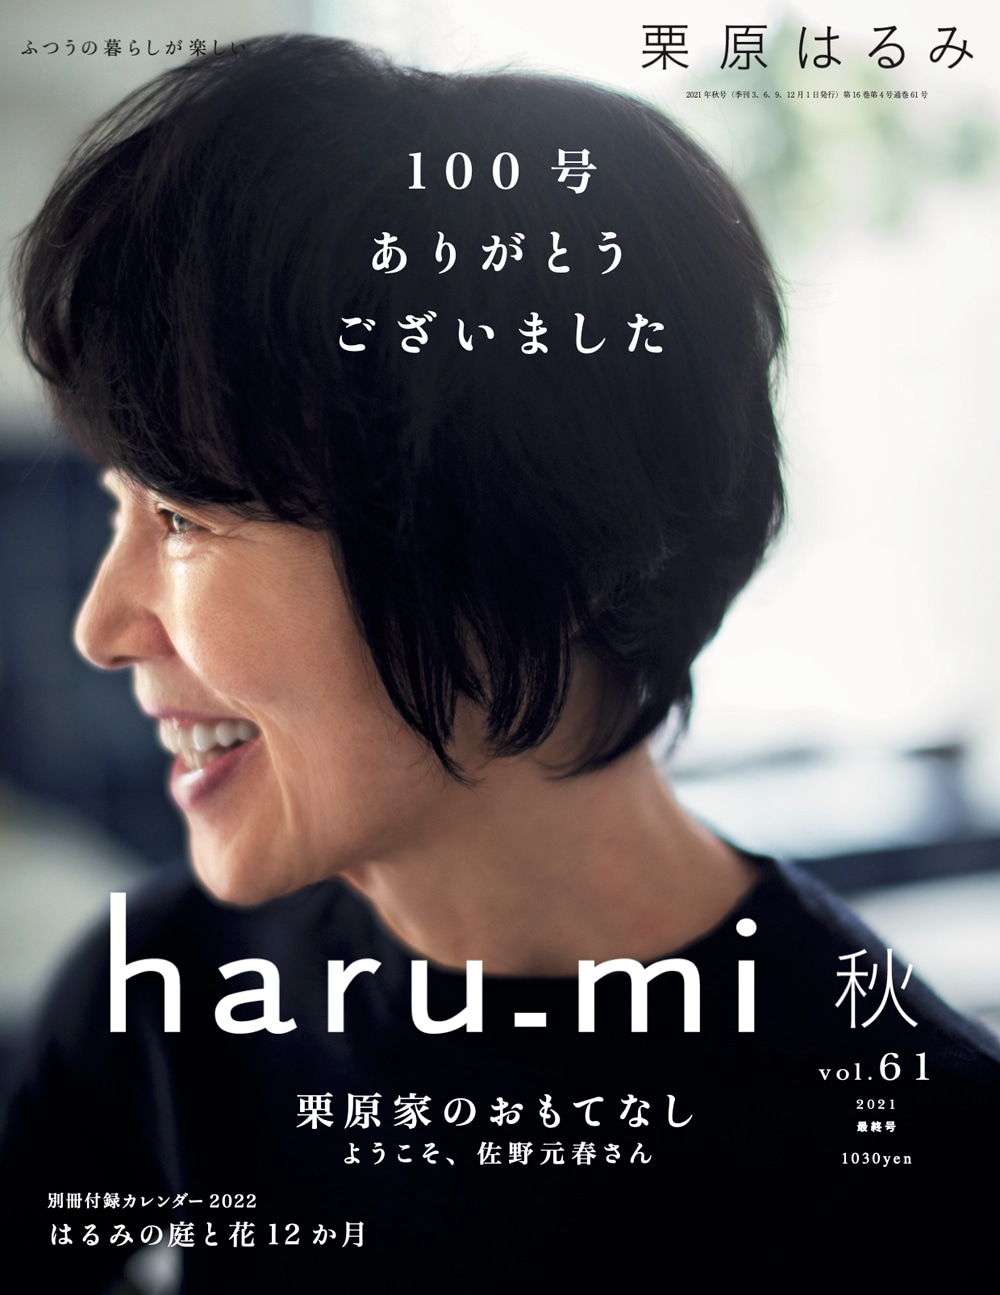 『haru_mi』vol.61 秋